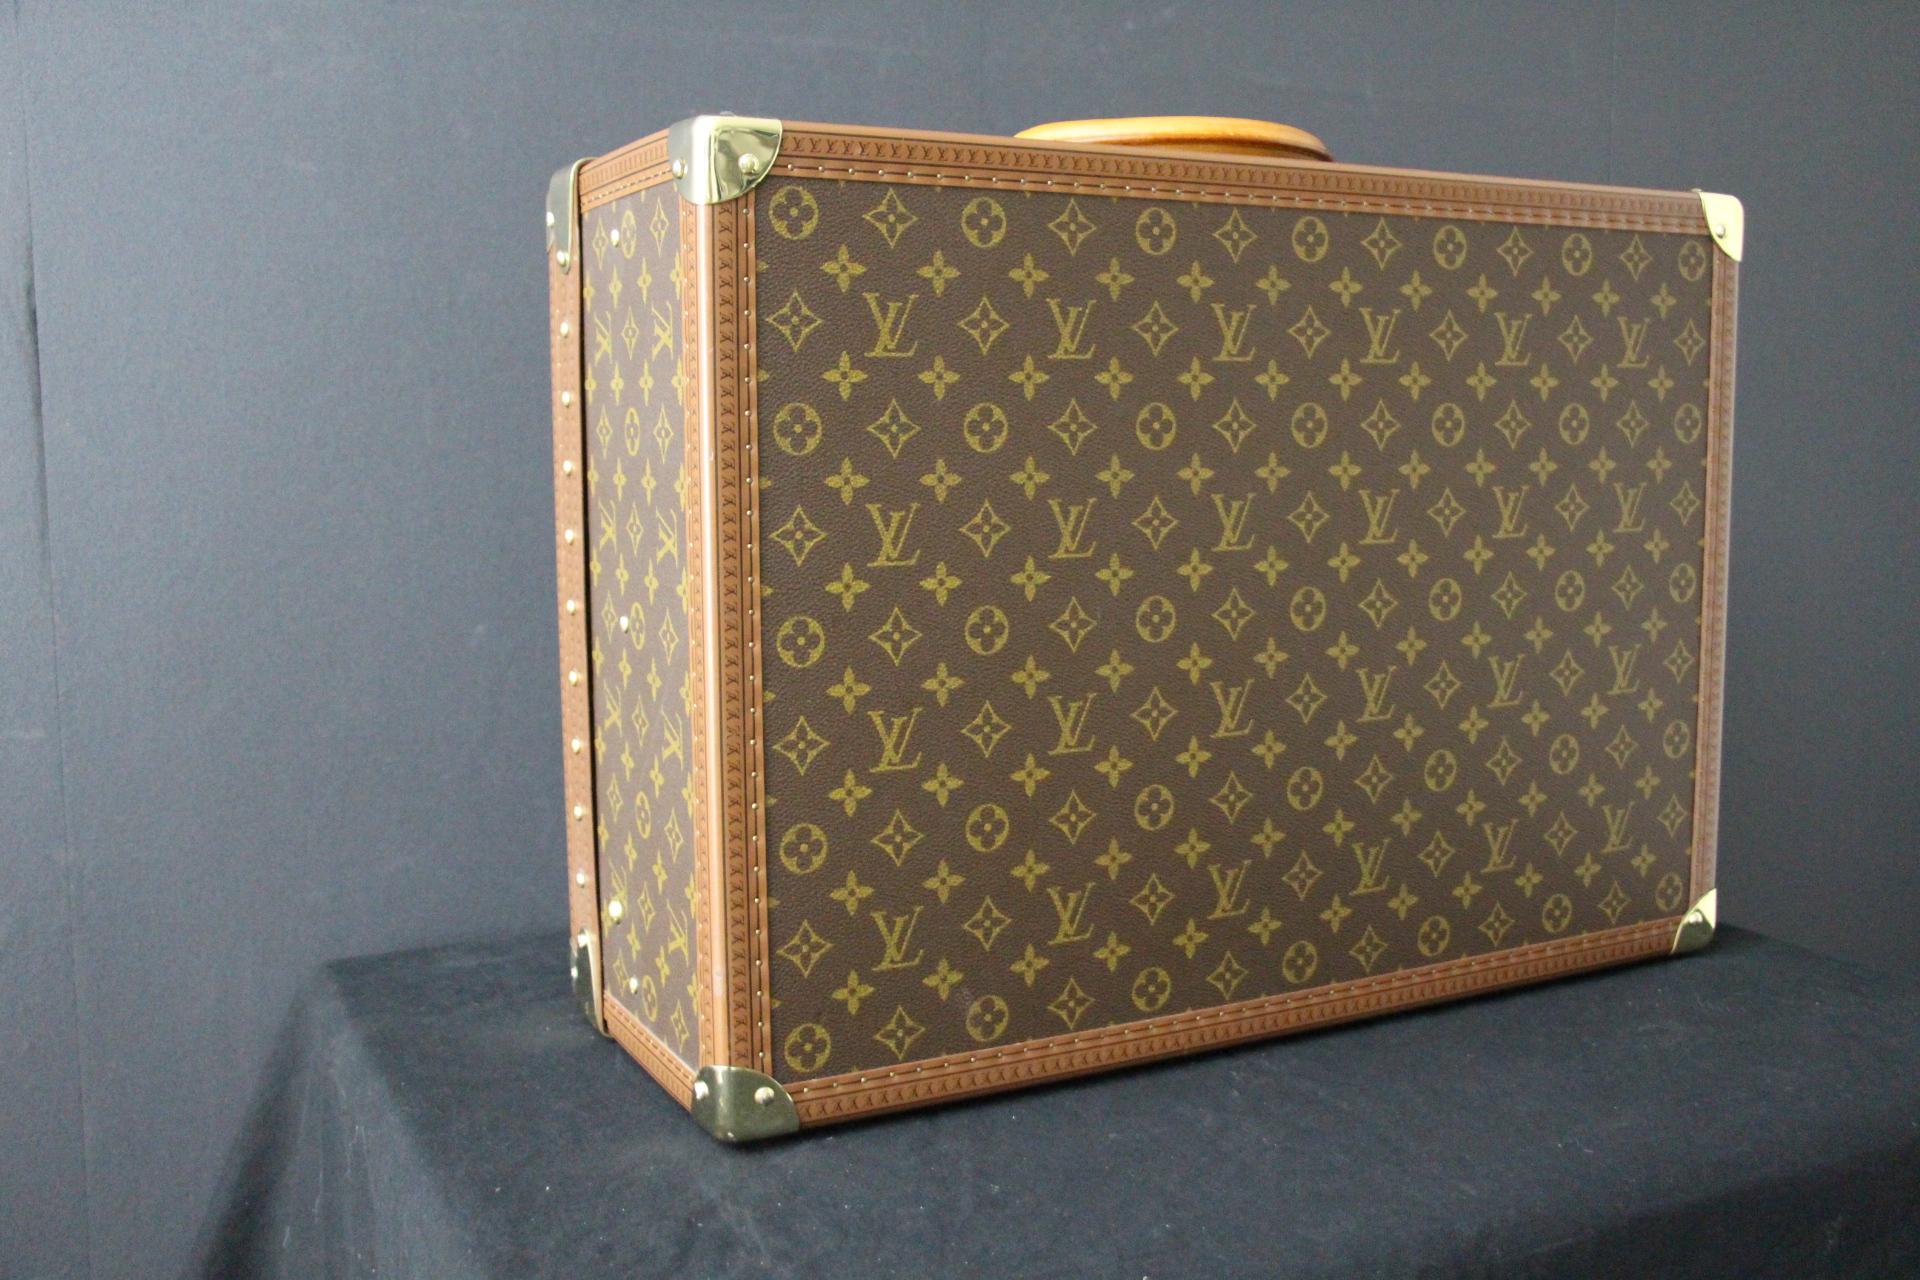  Valise Louis Vuitton, 55 Alzer valise Louis Vuitton, 55 cm 9